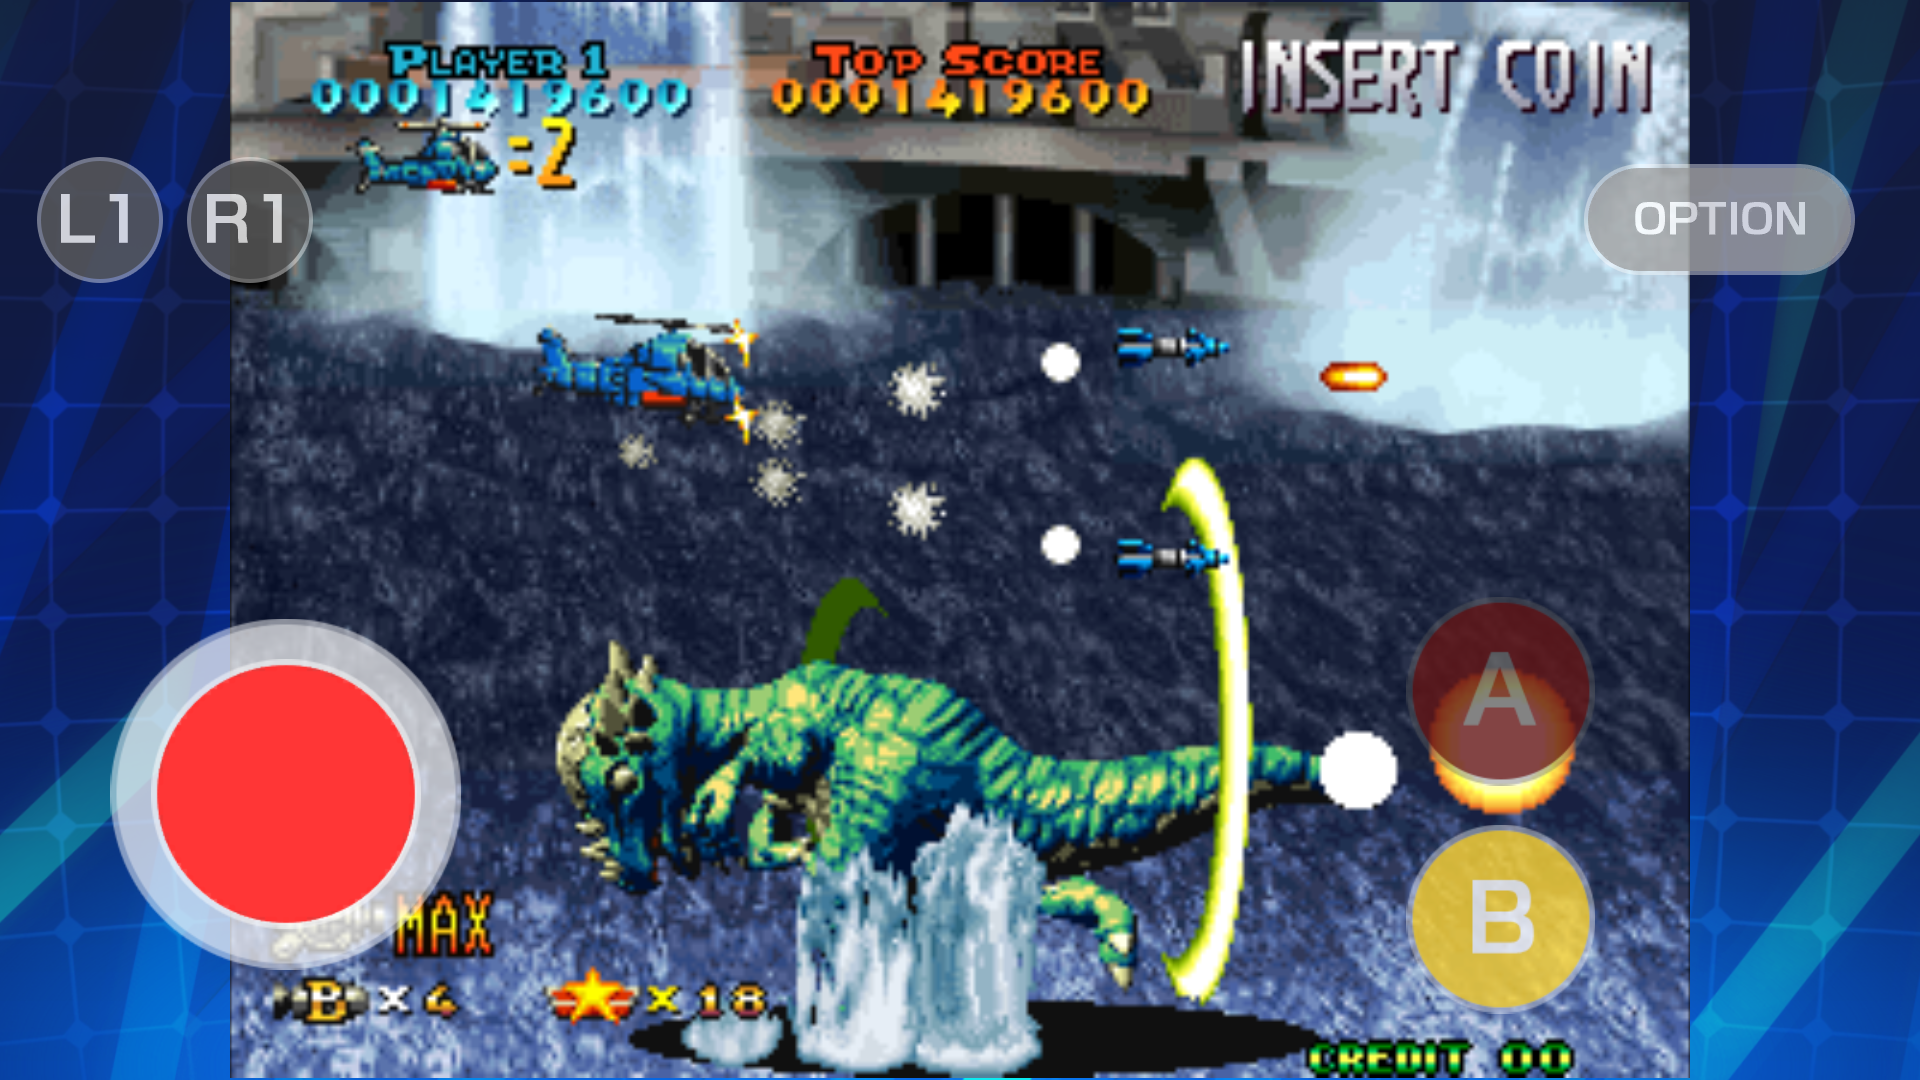 PREHISTORIC ISLE 2 ACA NEOGEO screenshot game